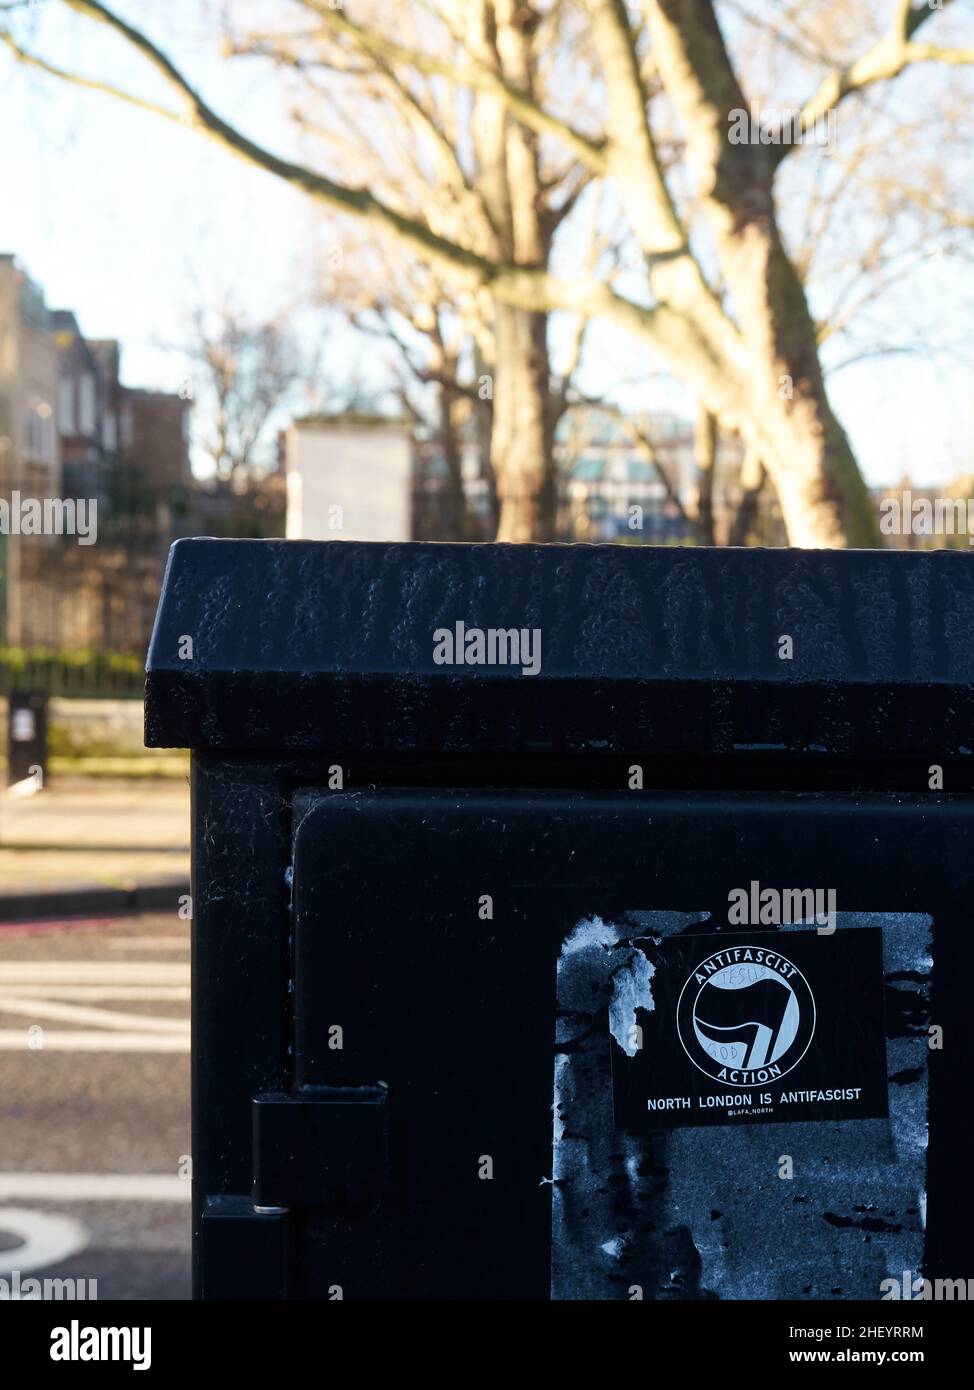 Expression politique dans les rues de Londres, Royaume-Uni - Un autocollant anti-fasciste de gauche sur le côté d'une boîte de communication près d'un parc de Londres. Banque D'Images